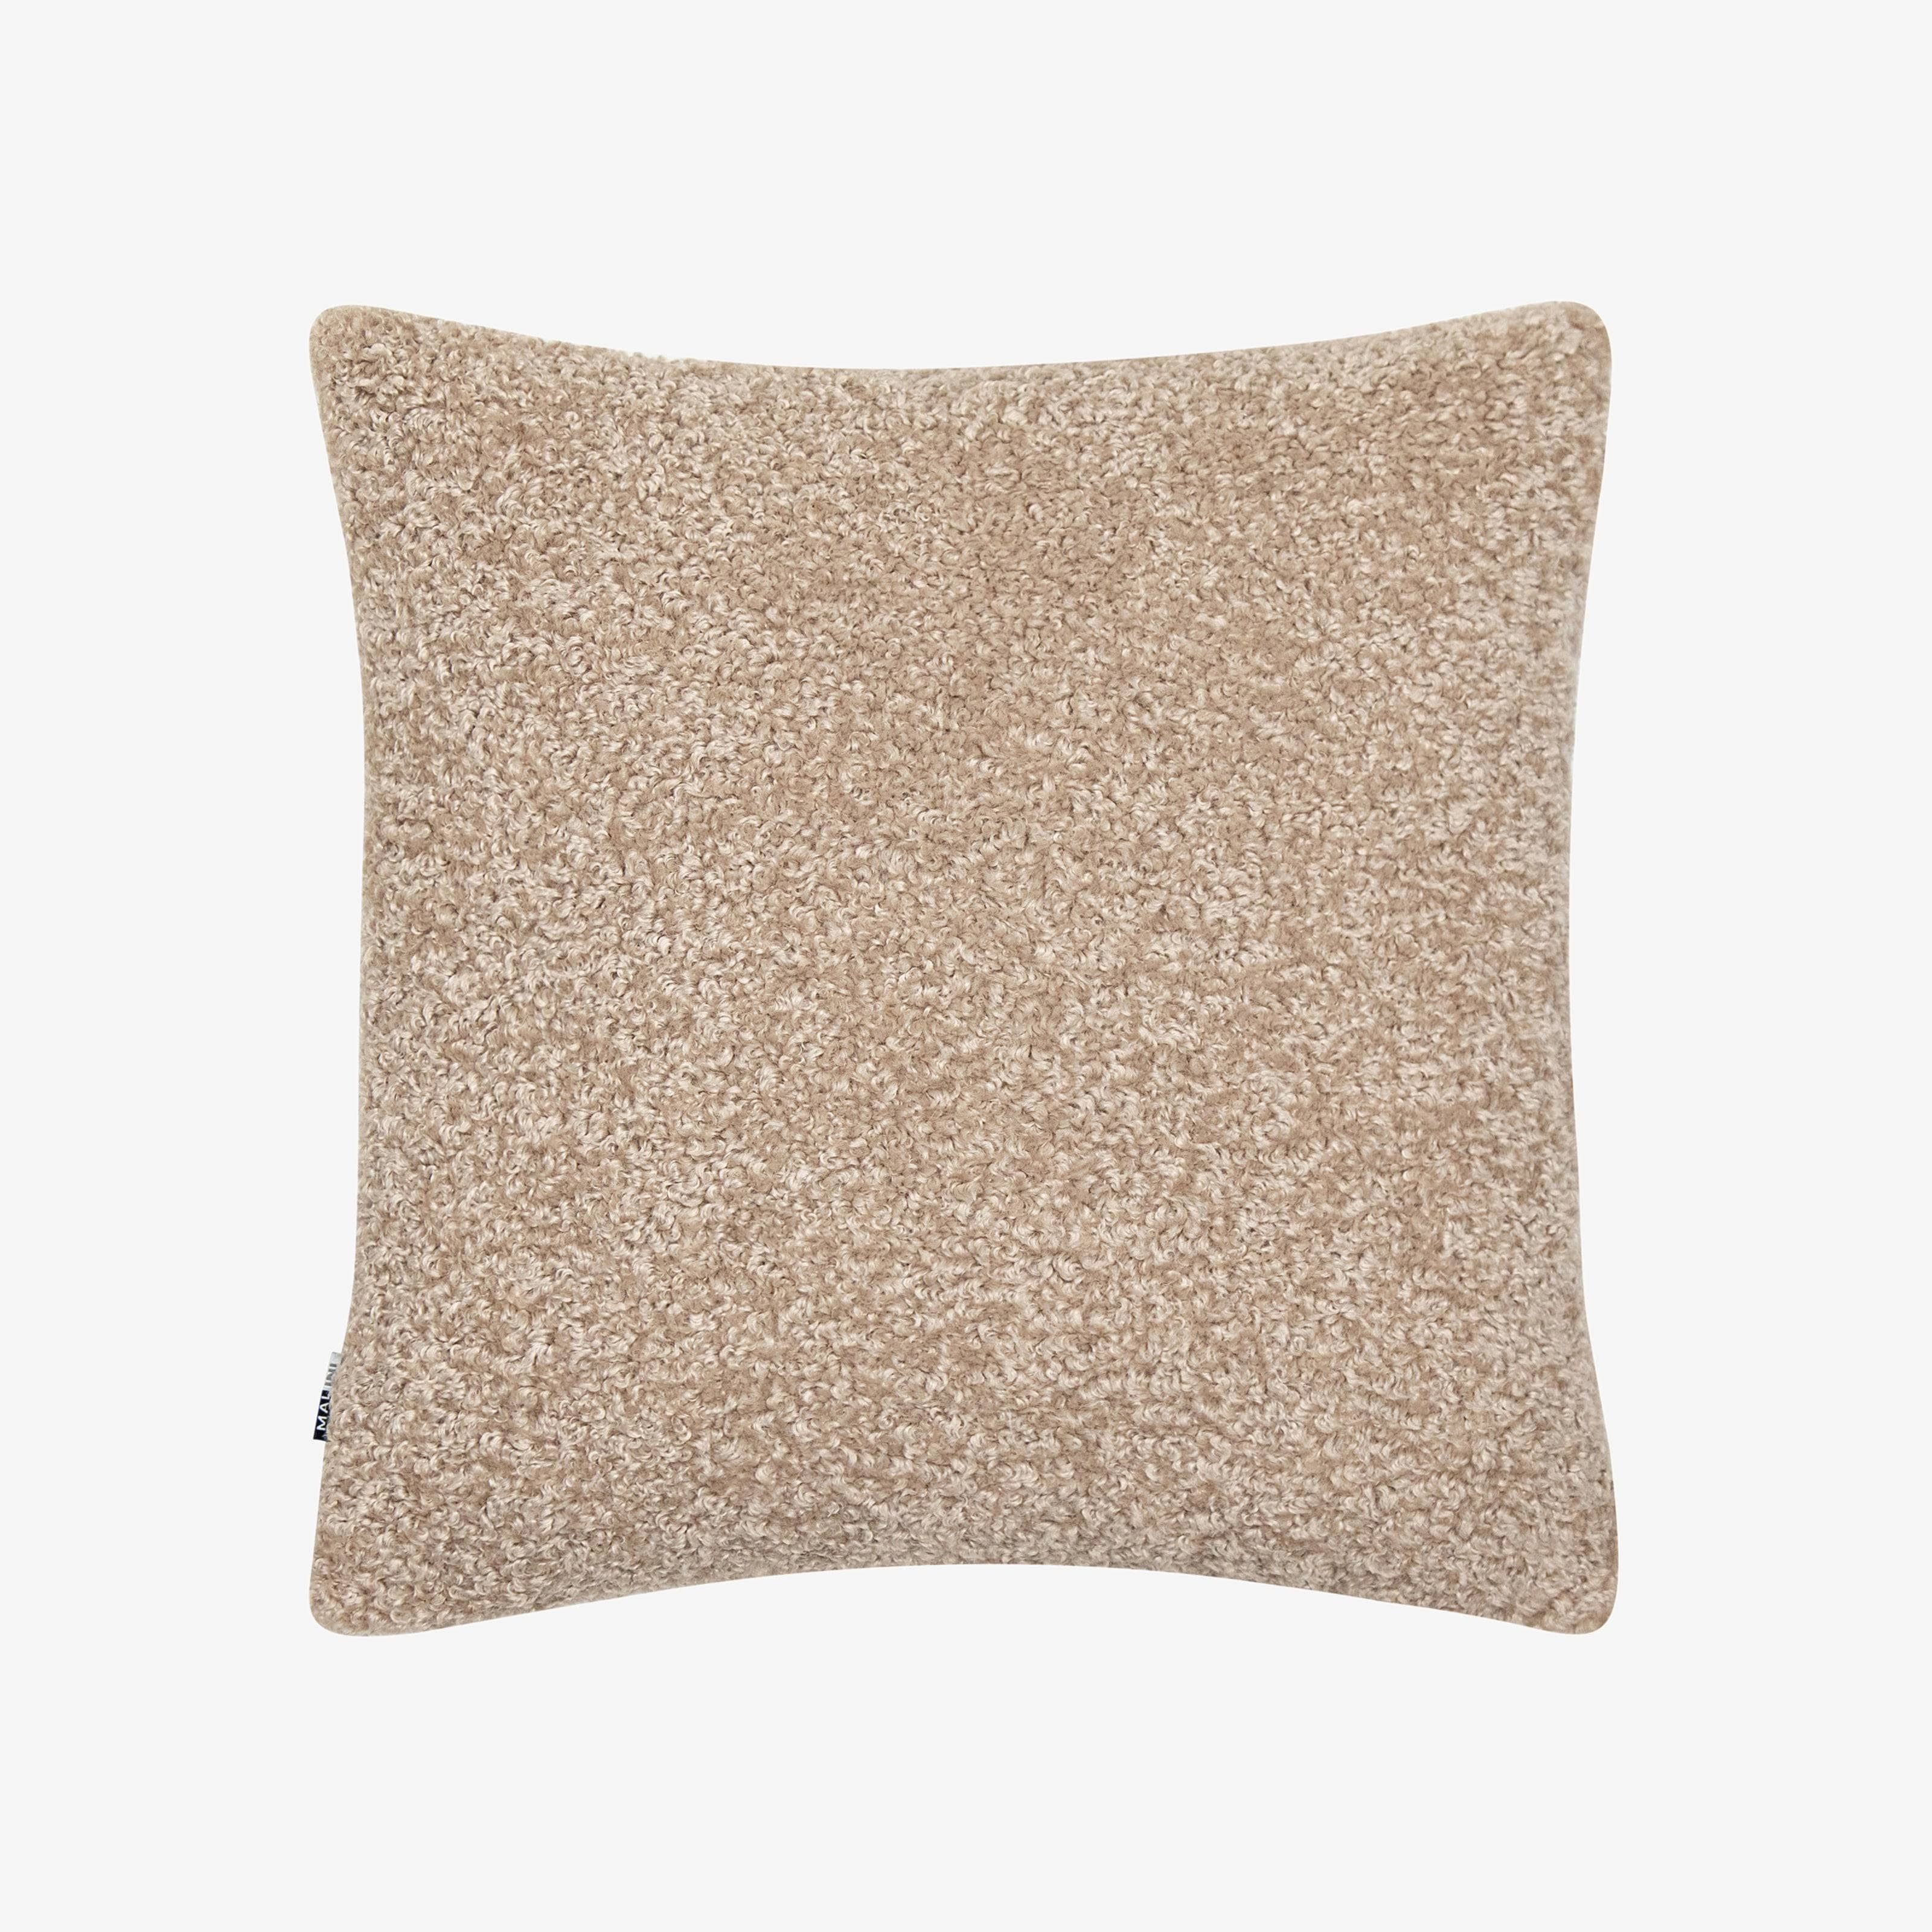 Ursulus Faux Fur Cushion, Grey, 45x45 cm